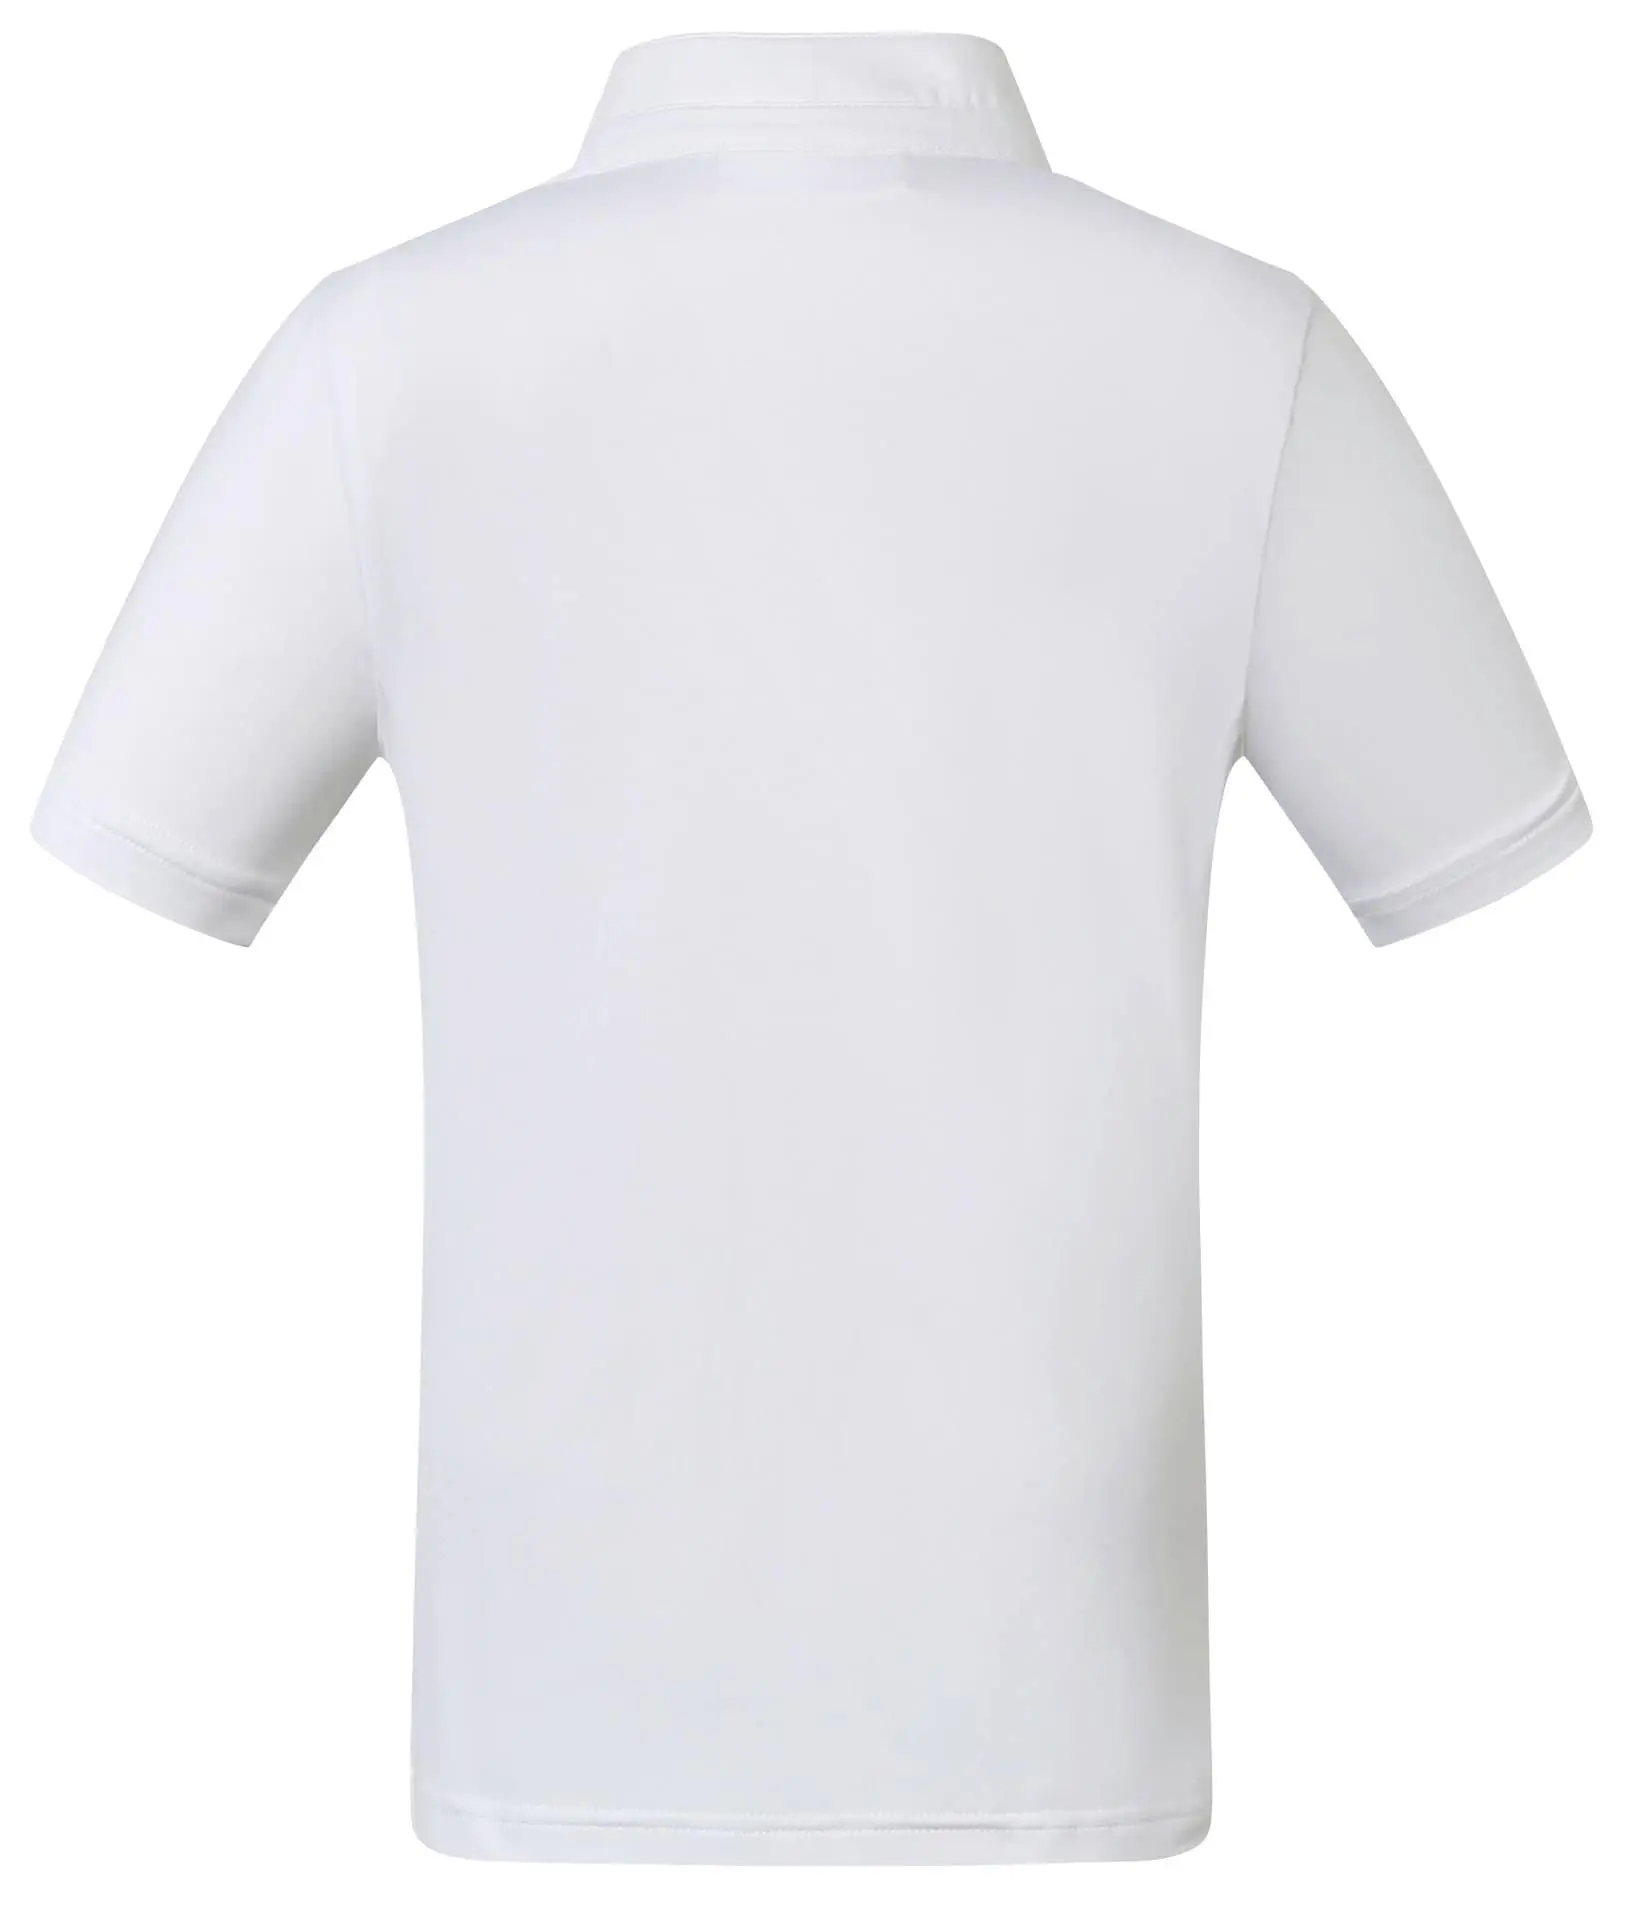 Competition Shirt Goldana Children white